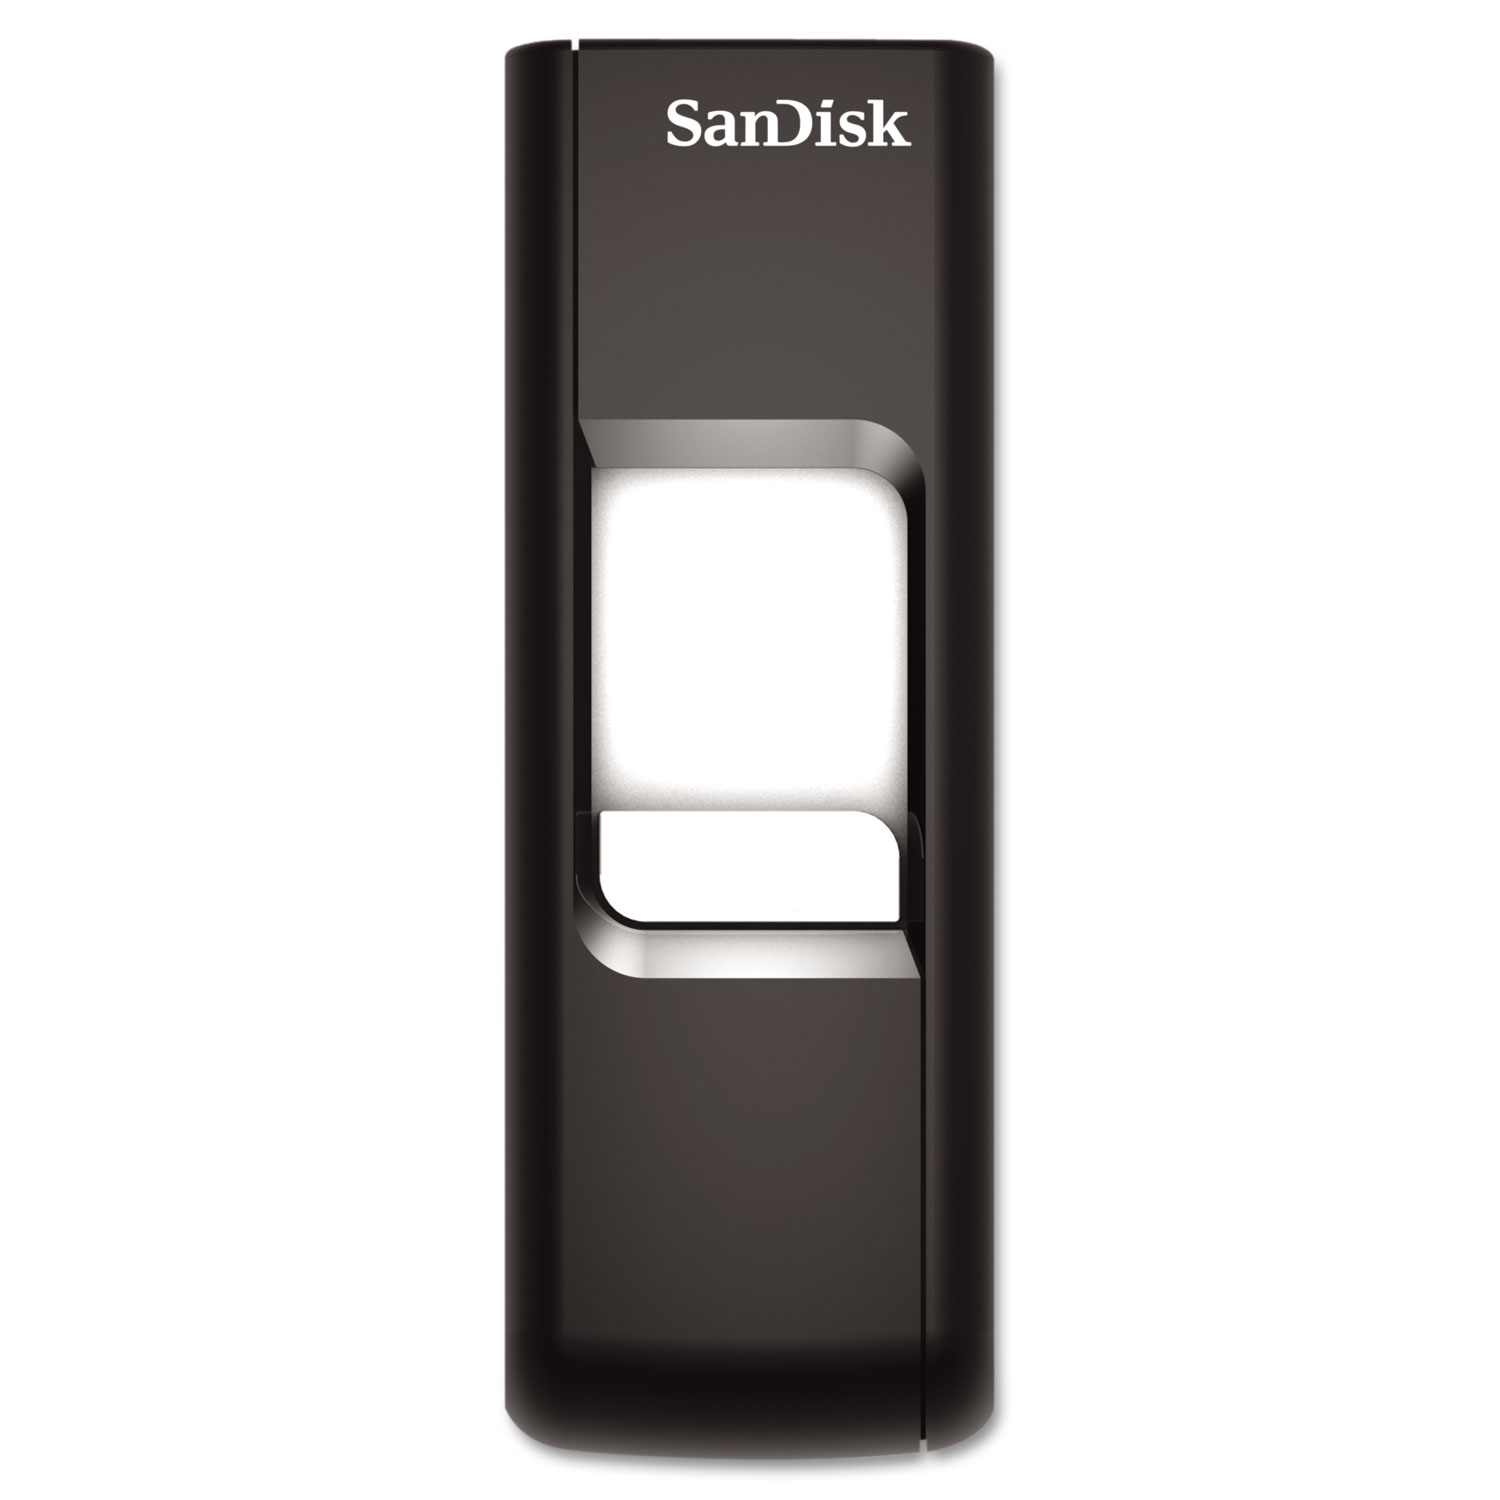  SanDisk SDCZ60-032G-A46 Cruzer USB 2.0 Flash Drive, 32 GB (SDIDCZ60032GA46) 